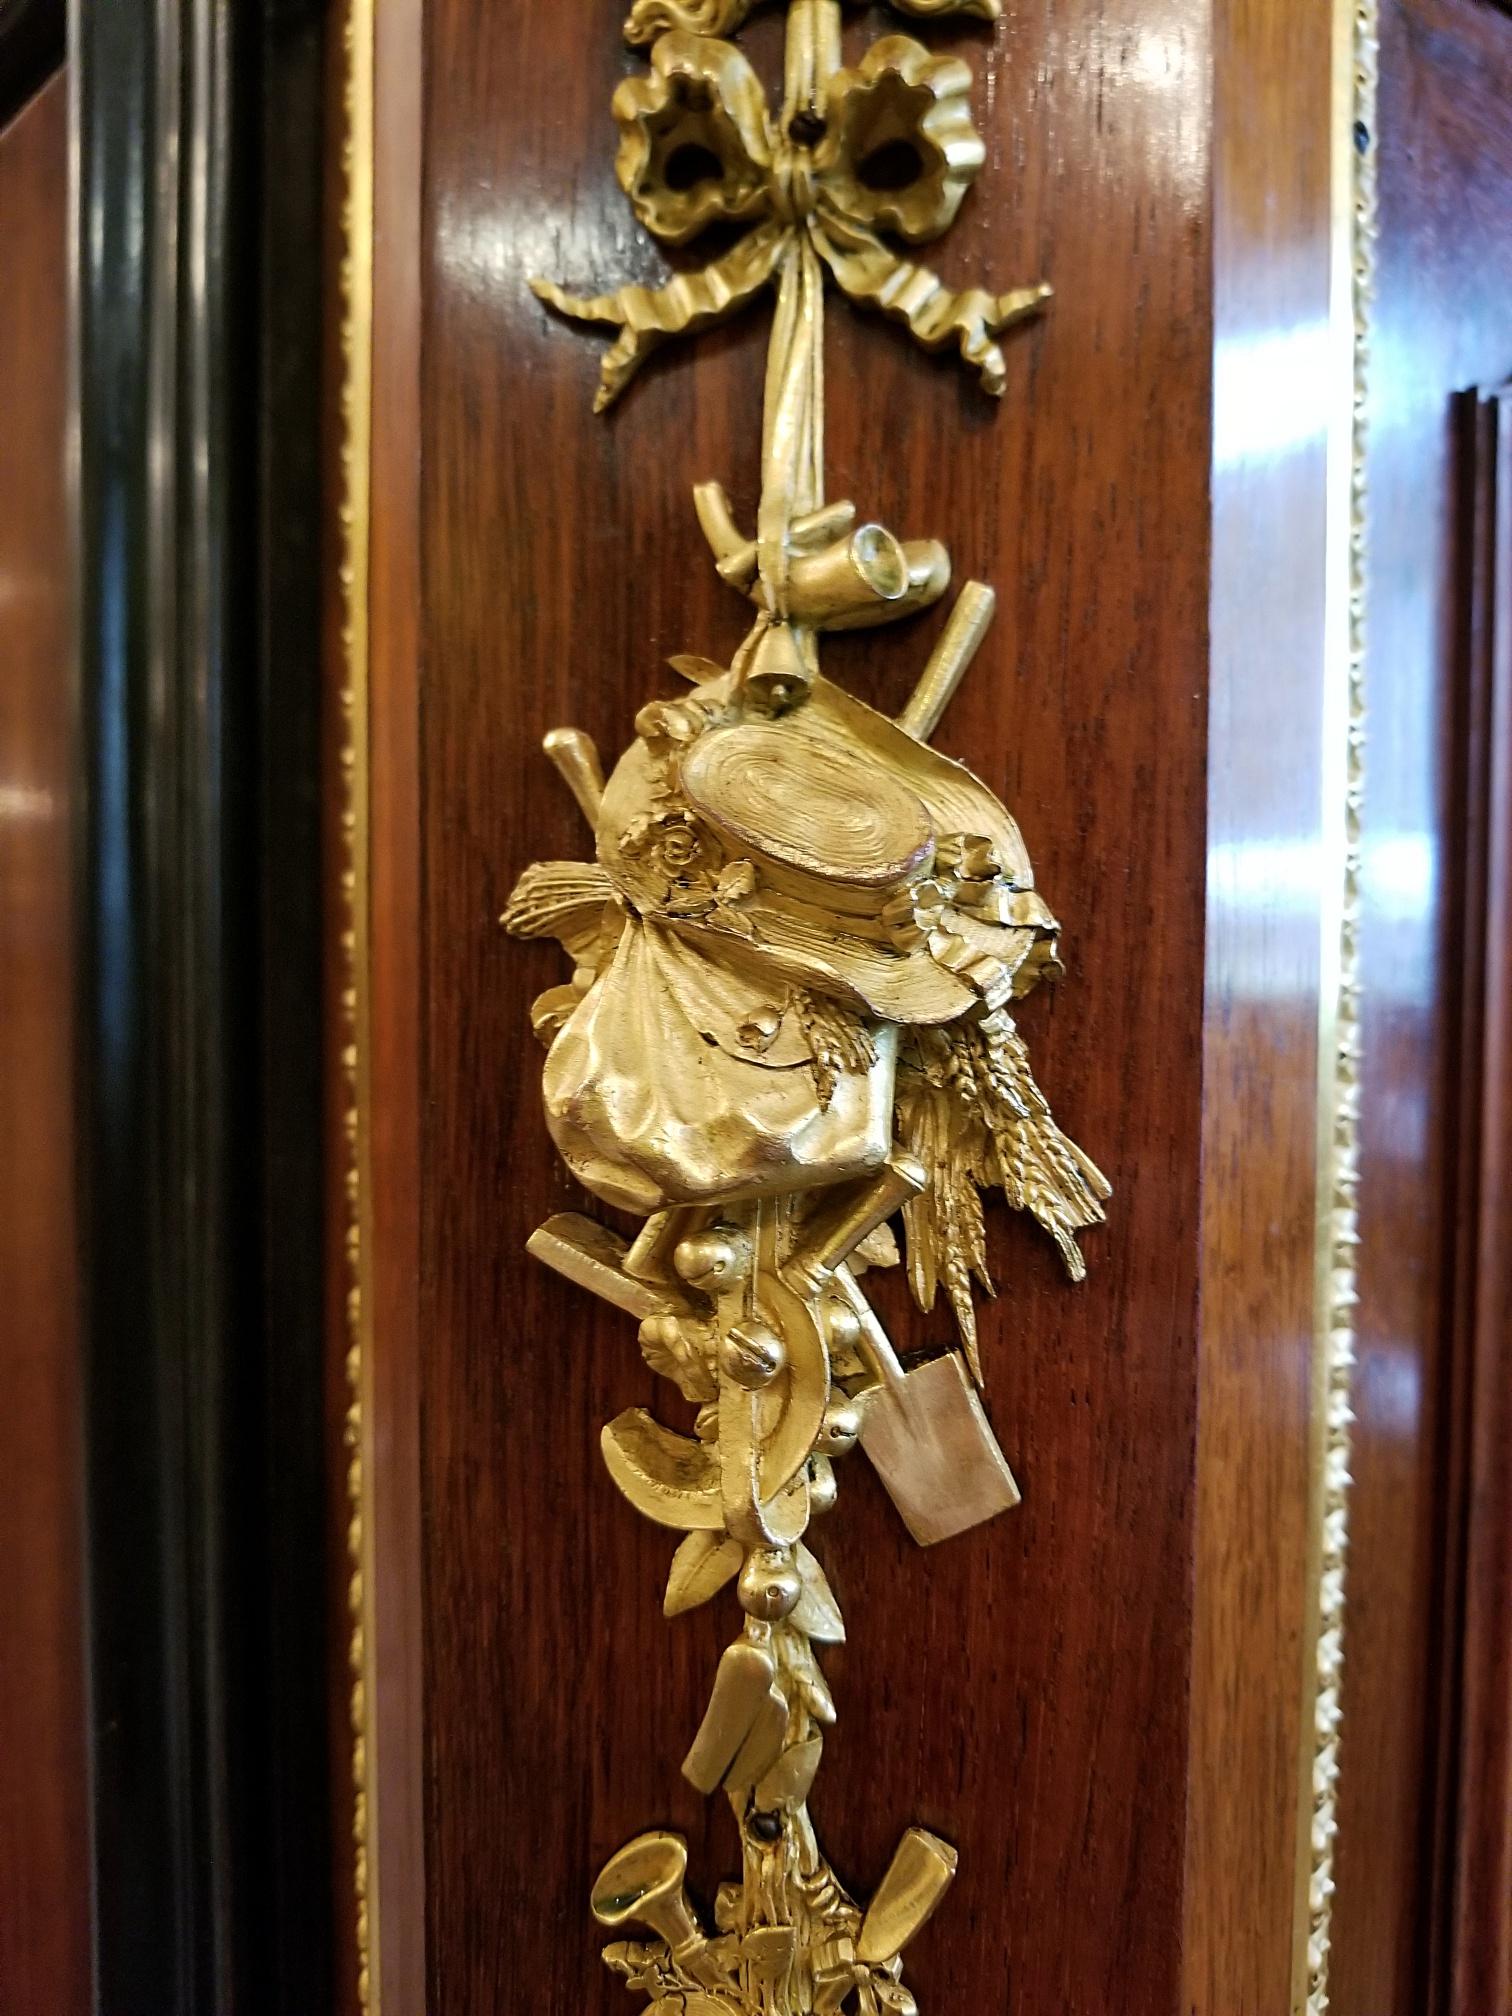 PRÉSENTE une magnifique armoire de style Louis XVI de la fin du 19e siècle, de style français, à la manière de Grohe Frères.

Vers 1880.

Montures en bronze doré ABSOLUMENT FABULEUSES. Les détails du moulage des montures sont stupéfiants.

Les